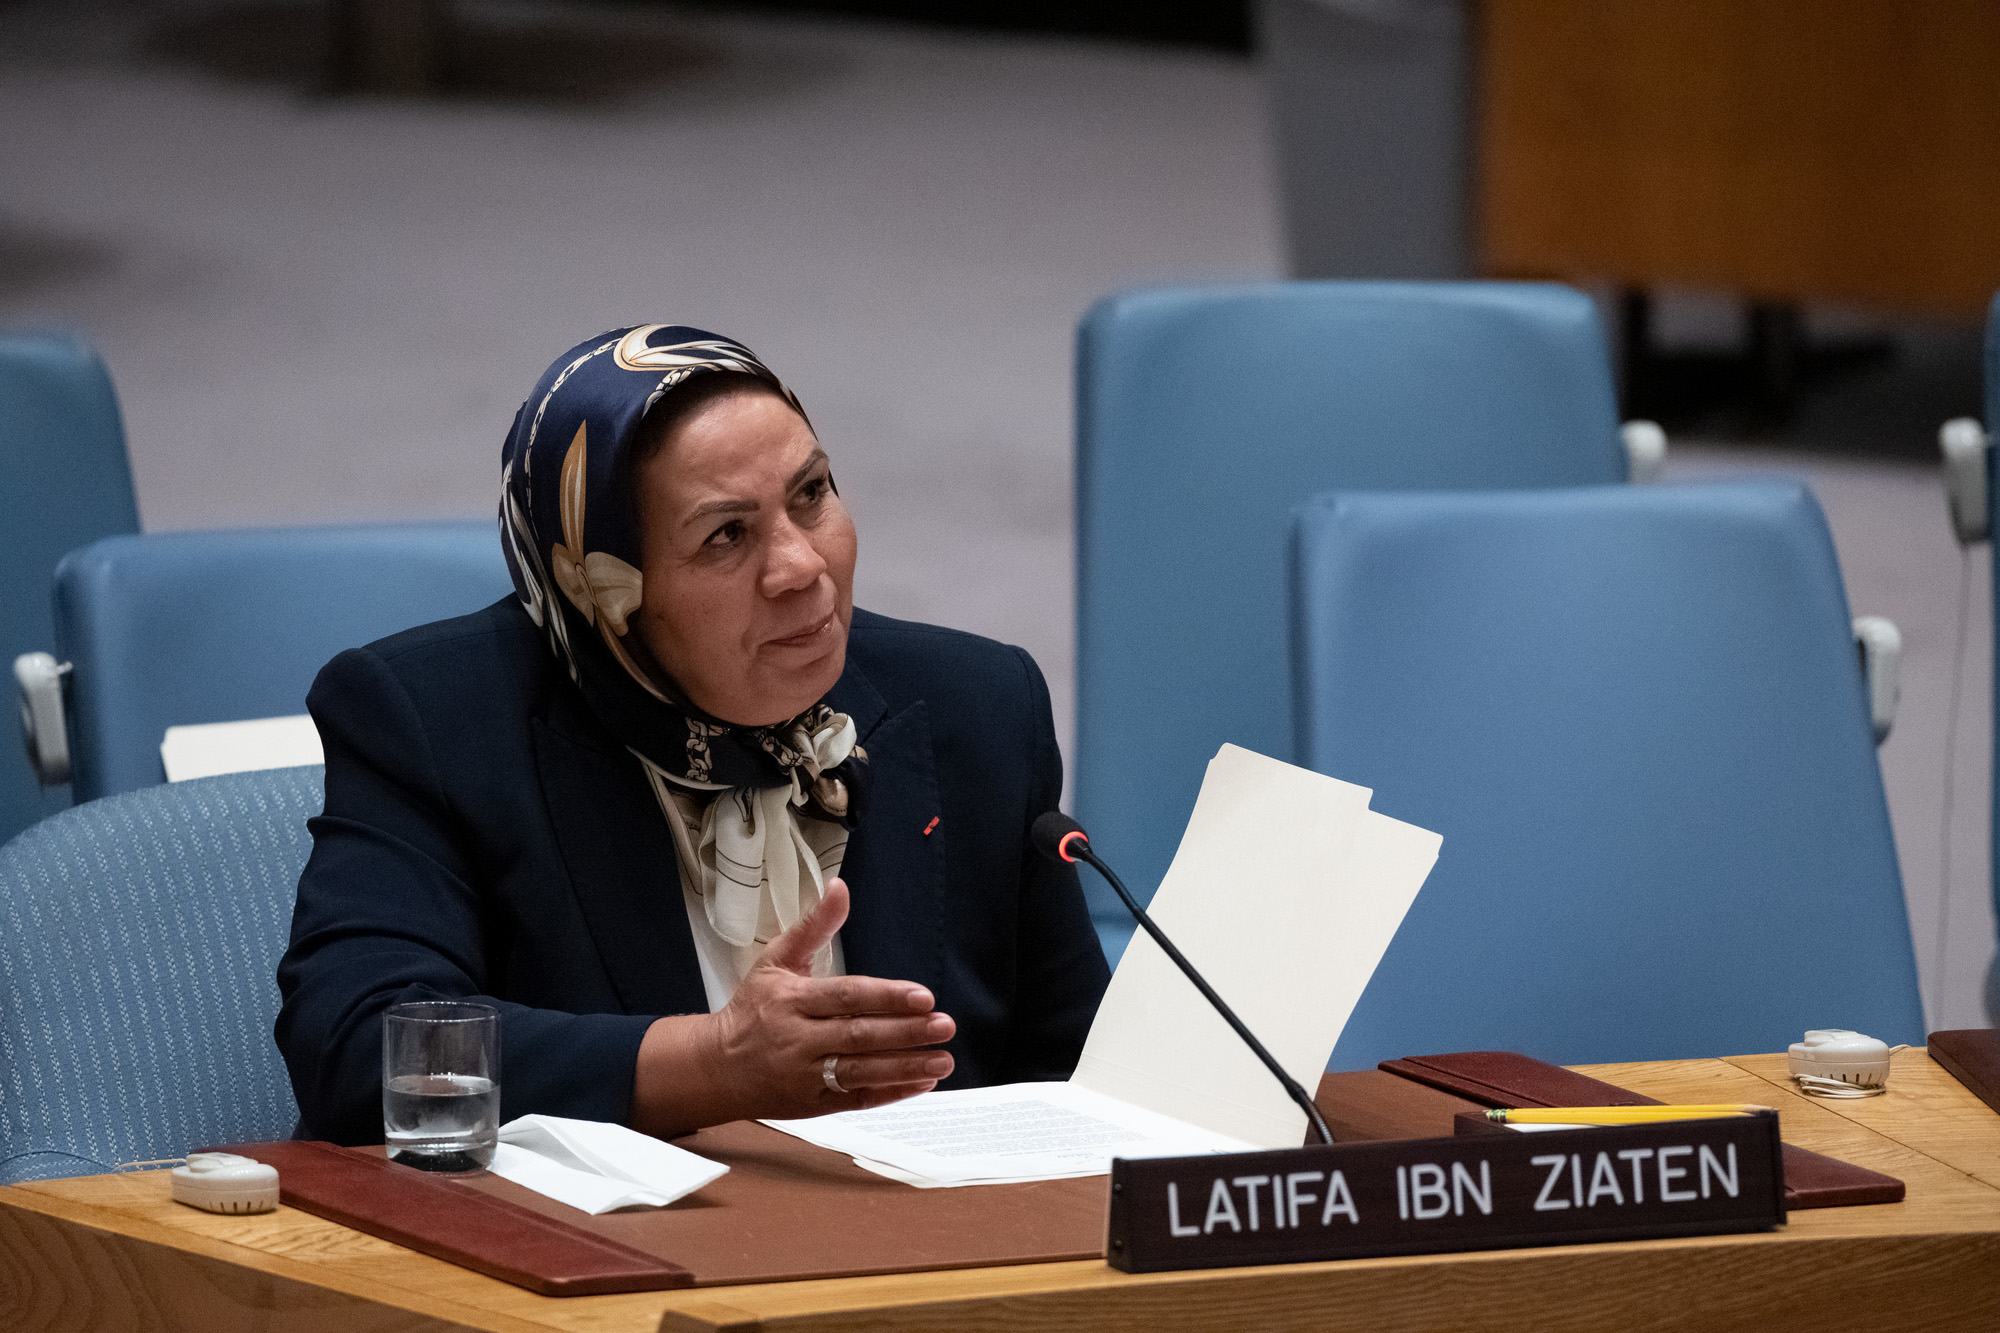 السيدة لطيفة بن زياتن رئيسة ومؤسسة جمعية عماد للشباب والسلام تلقي كلمة أمام جلسة مجلس الأمن حول "قيم الأخوة الإنسانية في تعزيز السلام واستدامته".